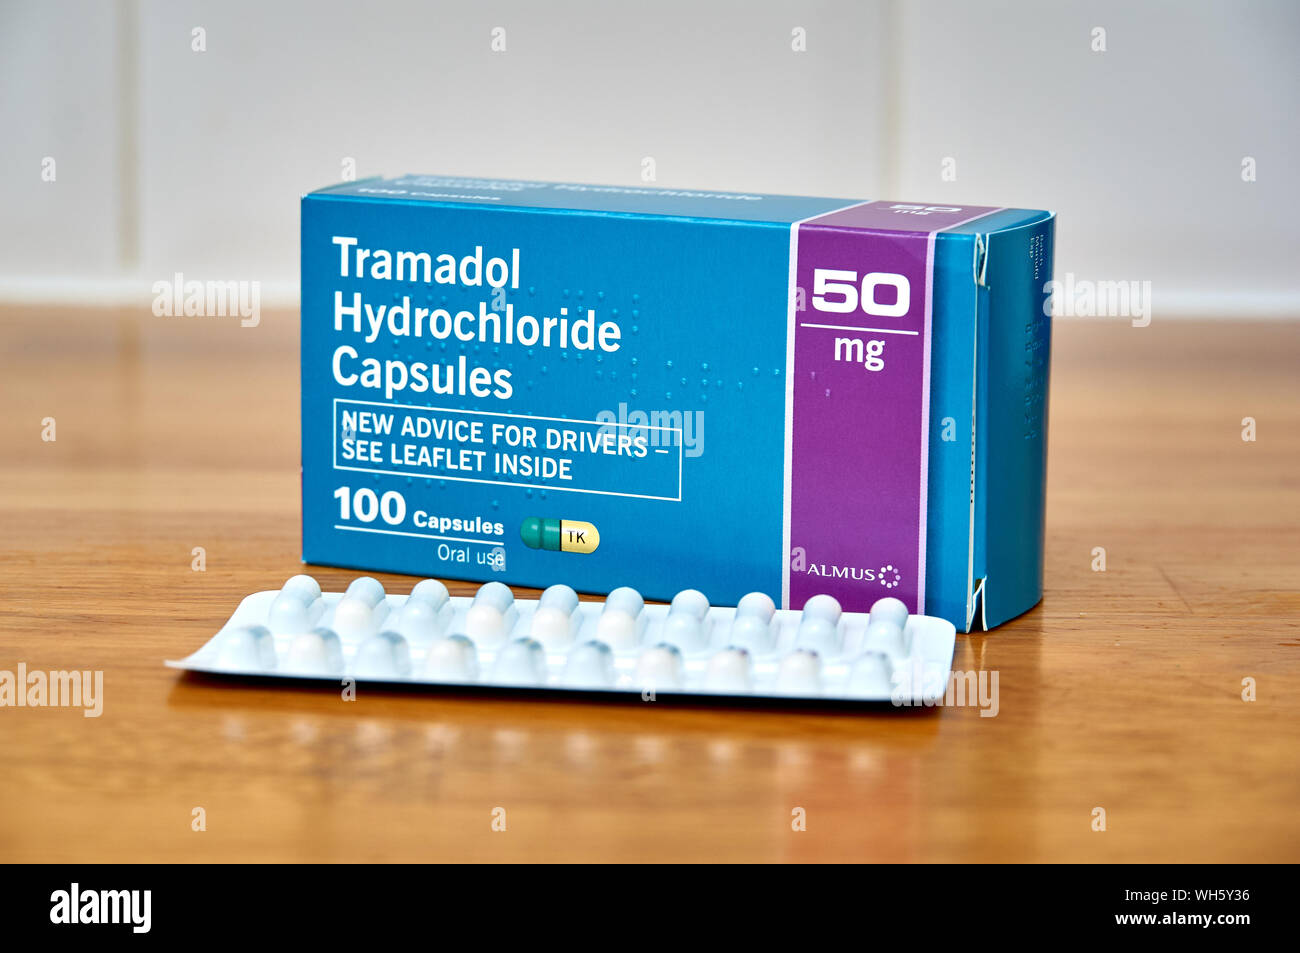 Tramadol hydrochloride capsules Banque de photographies et d'images à haute résolution - Alamy